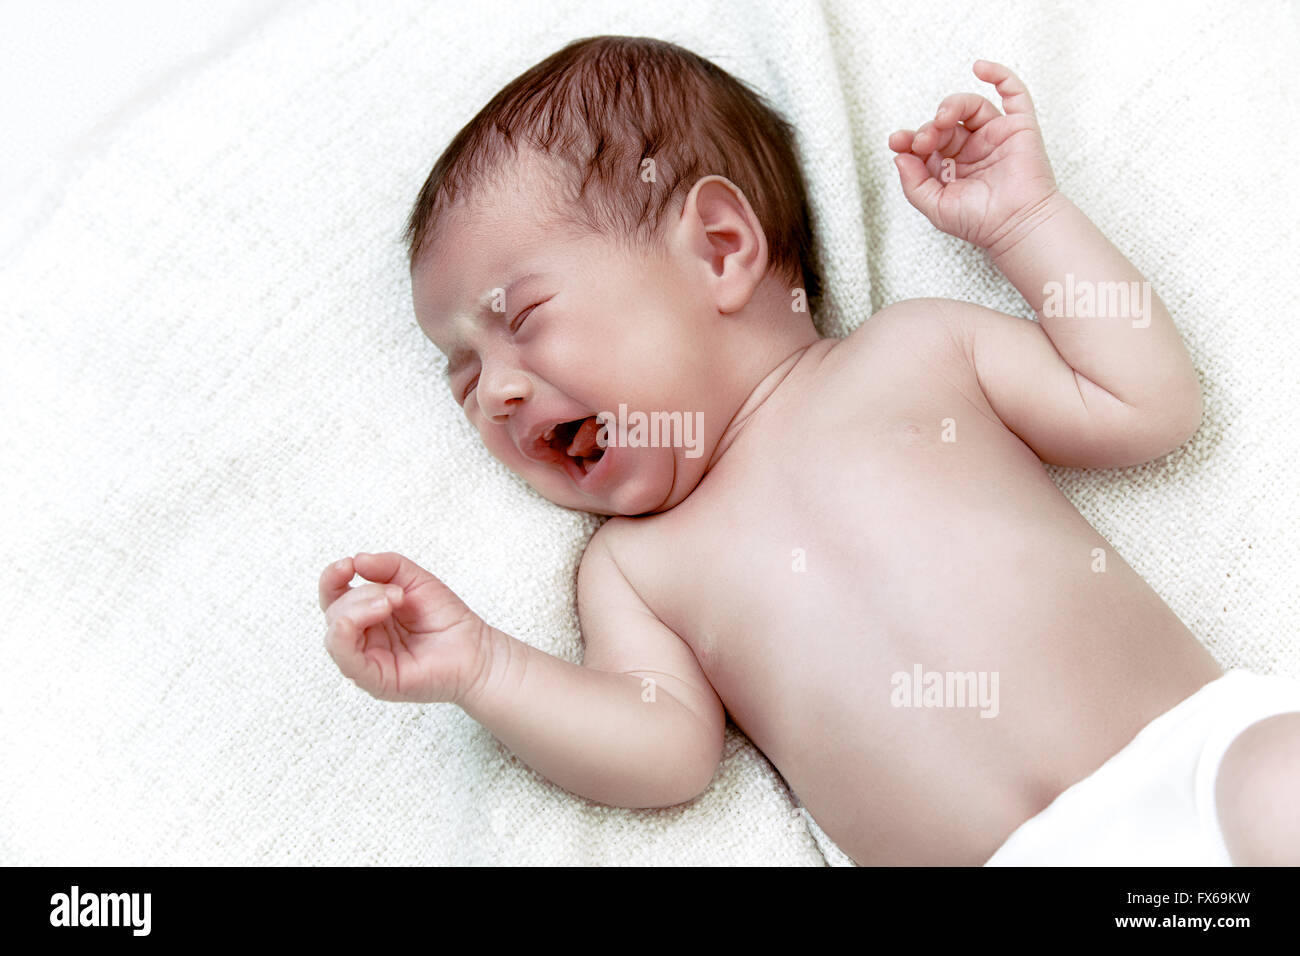 Bébé nouveau-né qui crie dans white bad Banque D'Images